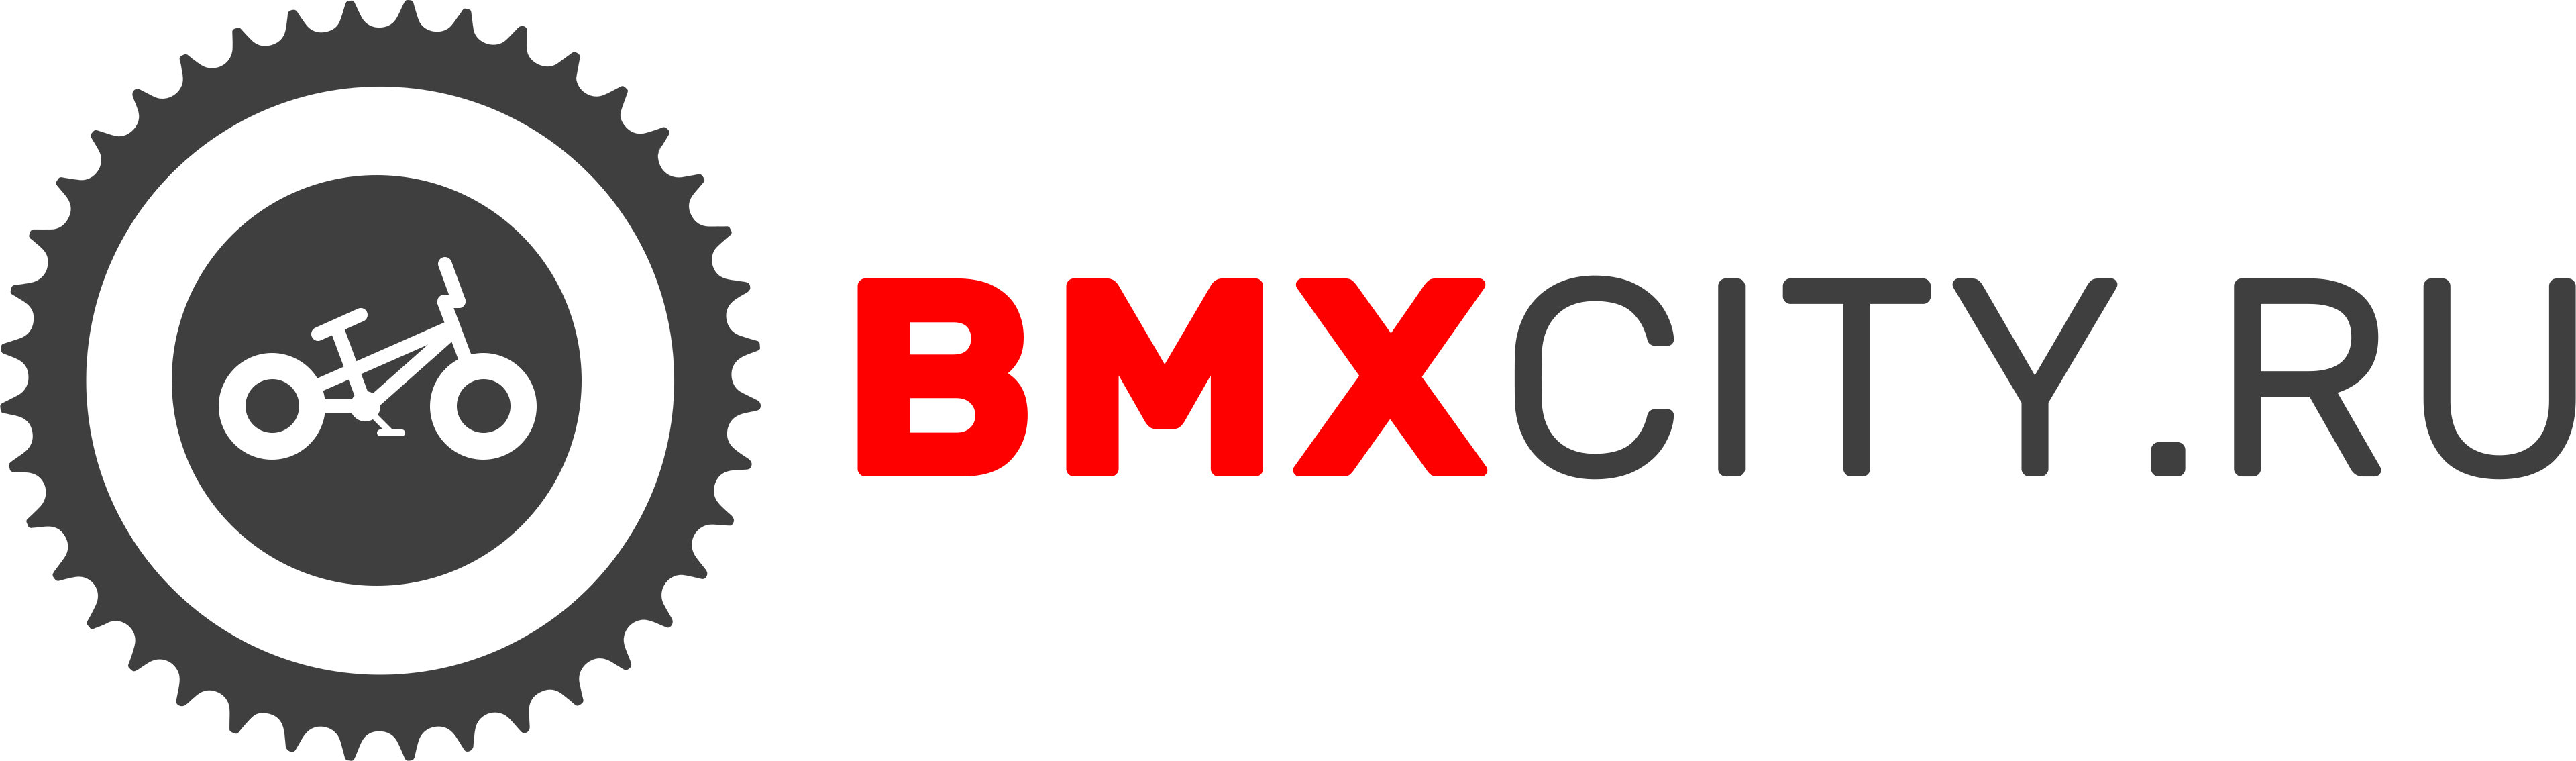 bmxcity.ru